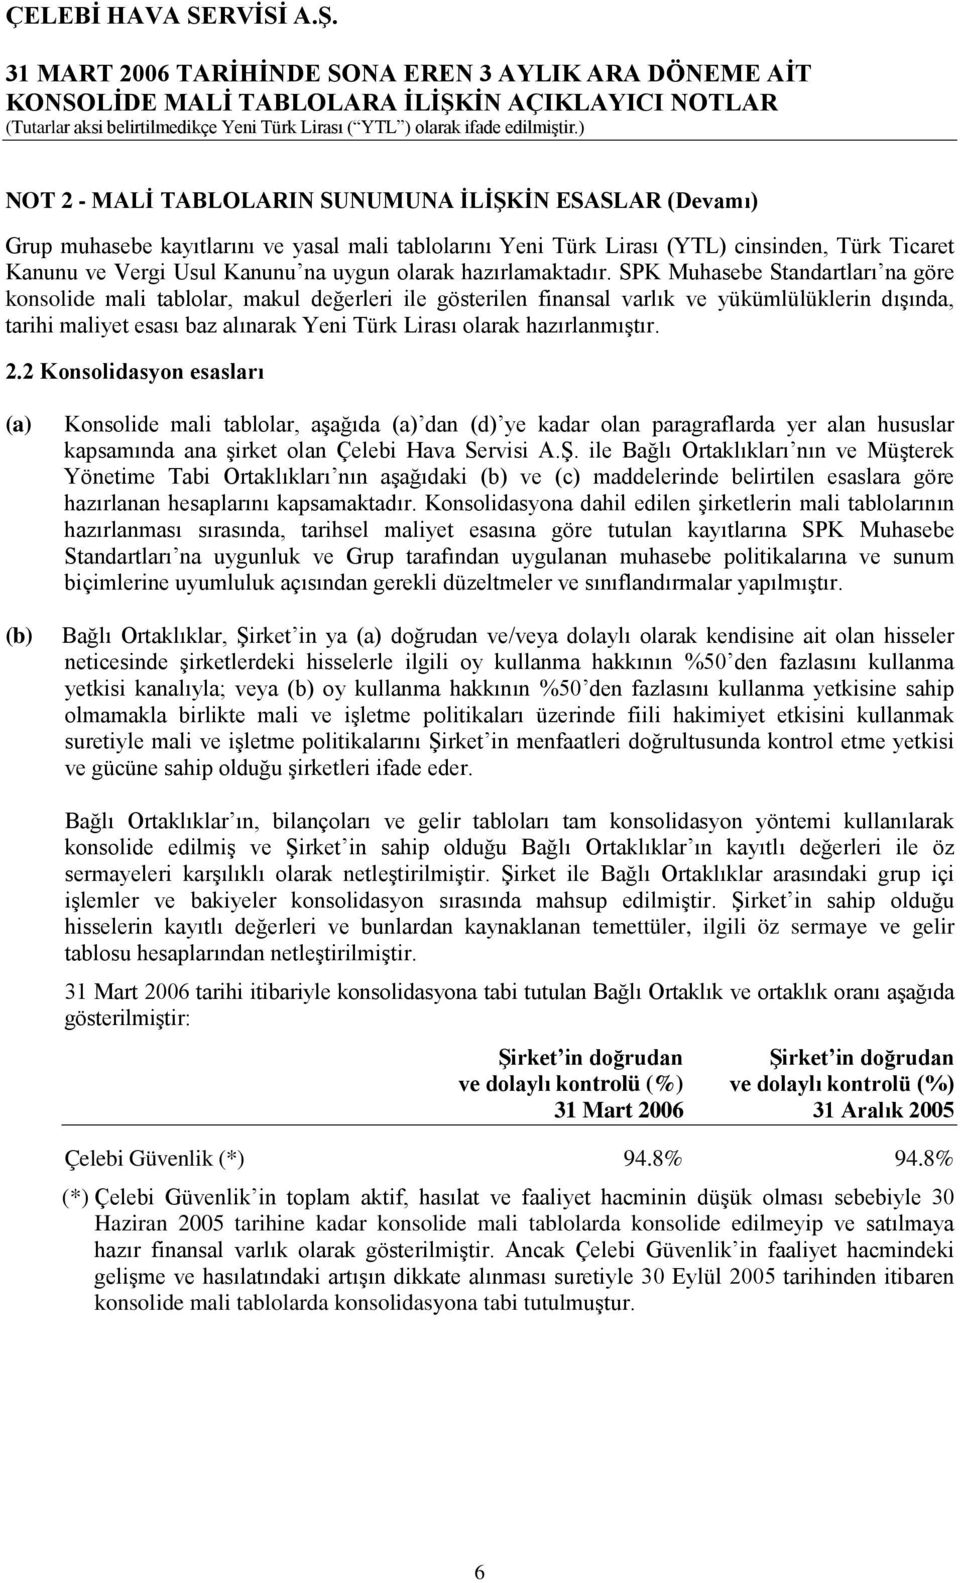 SPK Muhasebe Standartları na göre konsolide mali tablolar, makul değerleri ile gösterilen finansal varlık ve yükümlülüklerin dışında, tarihi maliyet esası baz alınarak Yeni Türk Lirası olarak